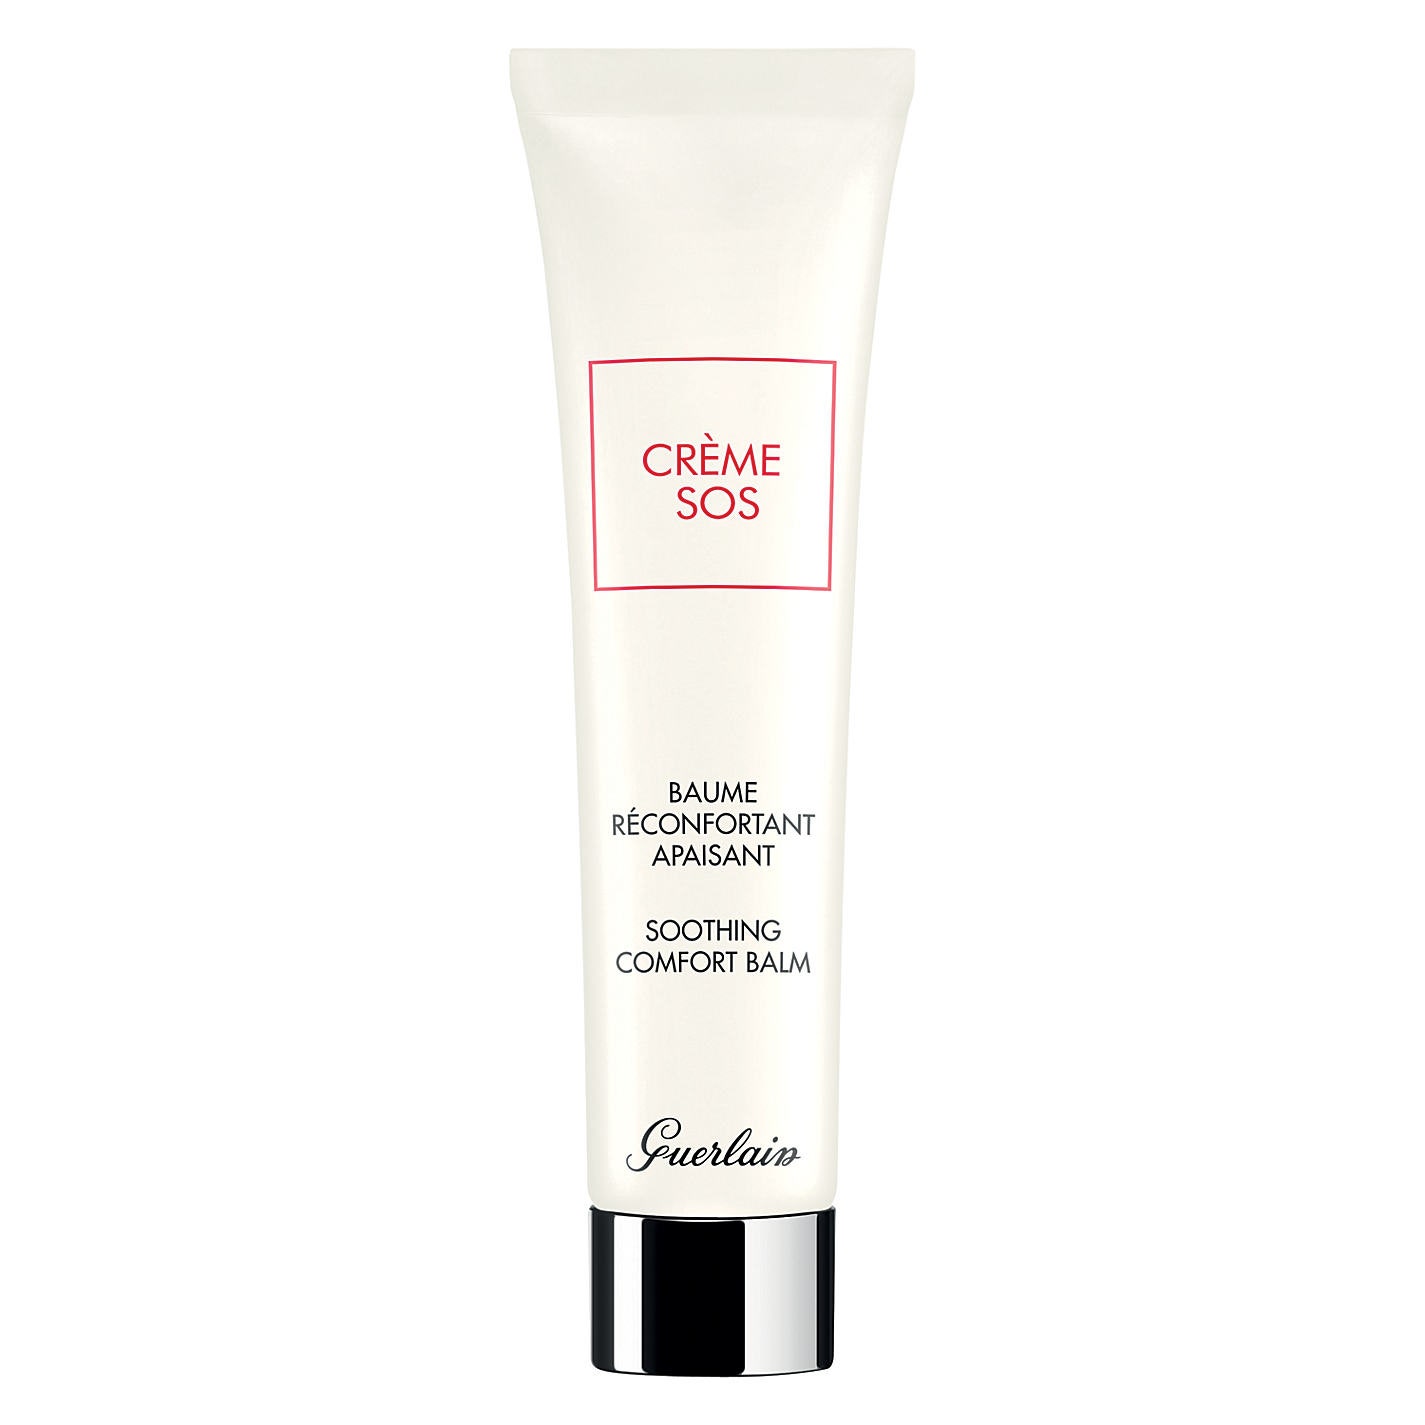 Бьютисредства с моментальным эффектом Crème SOS Guerlain Hand Cream Cellcosmet и другие | Allure